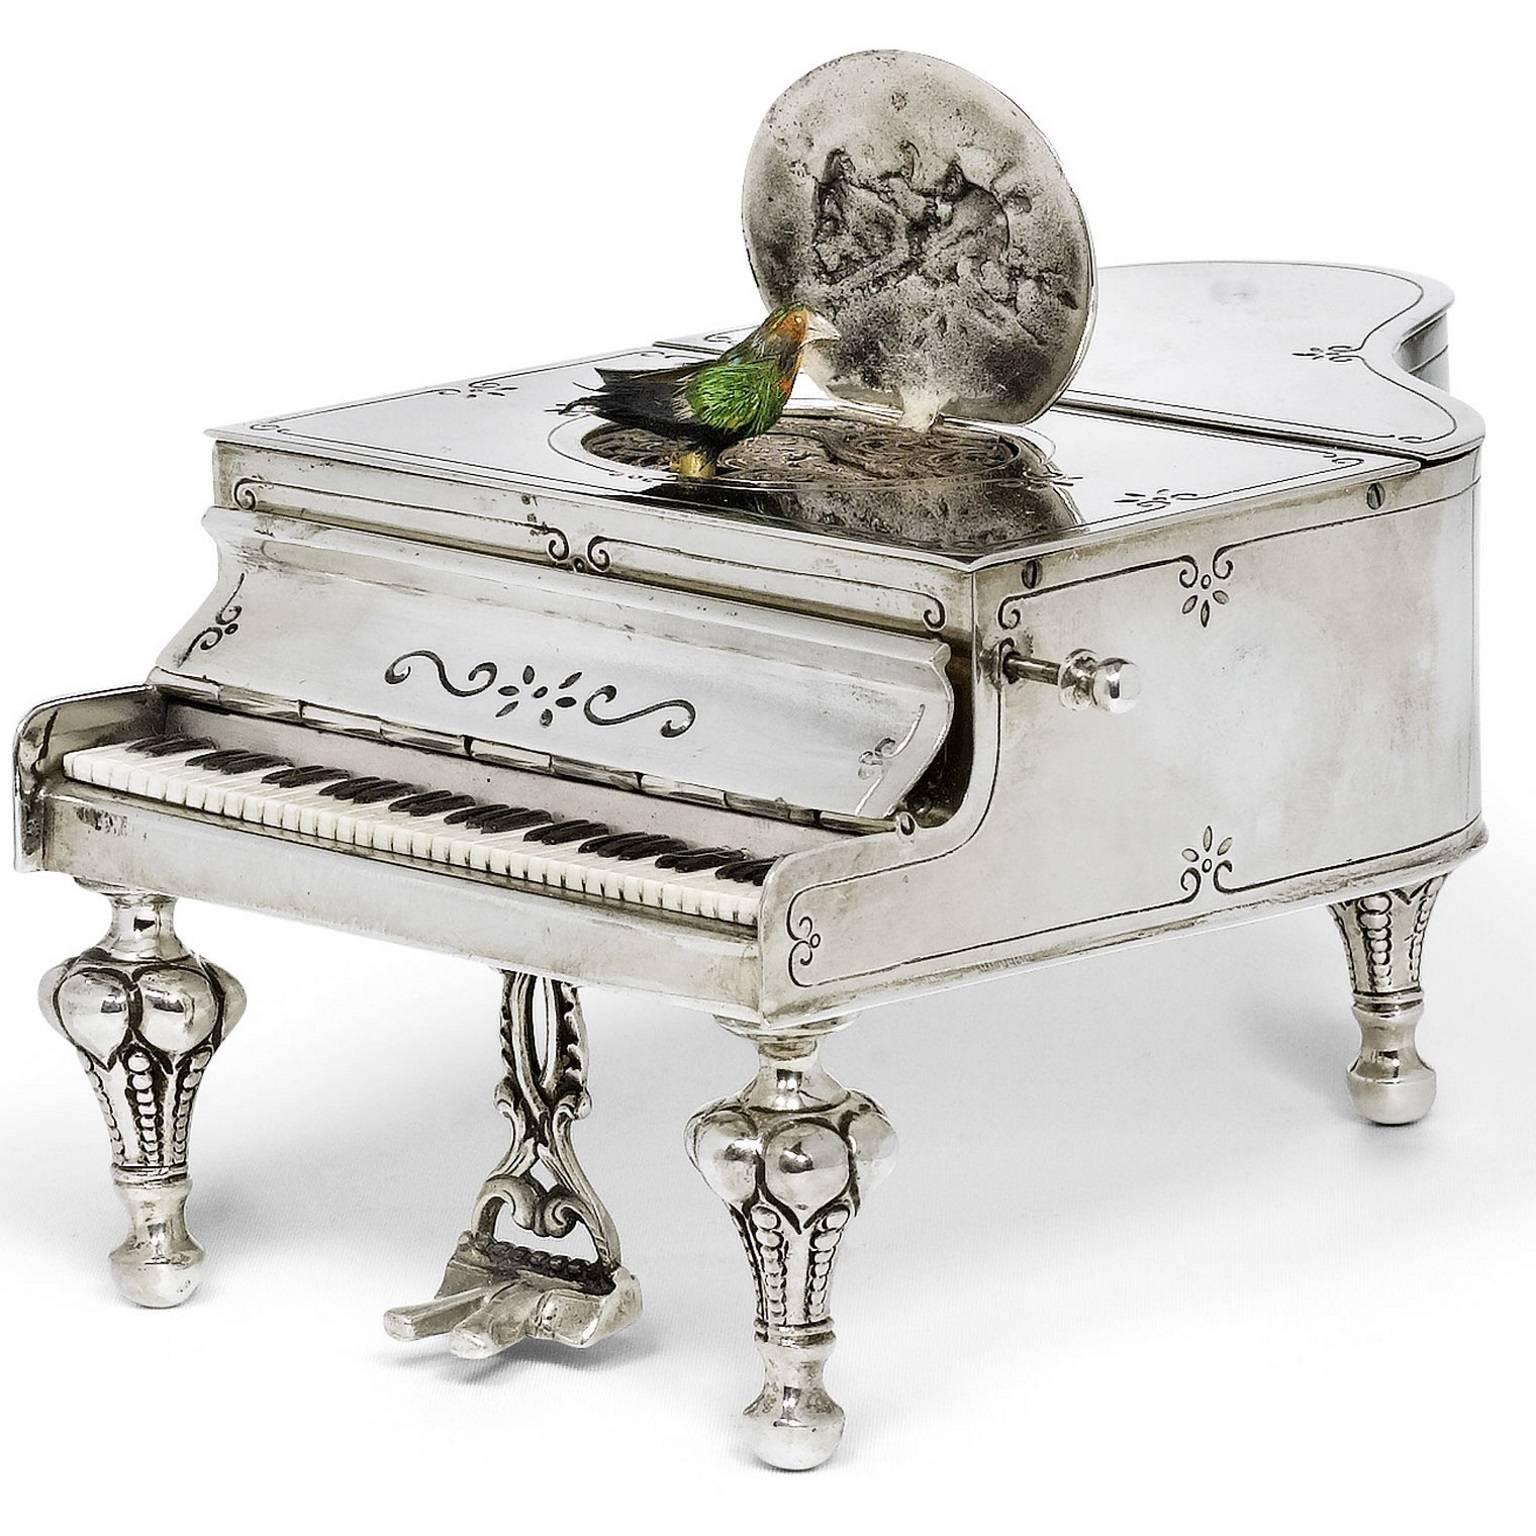 Cette charmante boîte à musique en argent ancien représente un oiseau chantant, qui apparaît dans un ovale ouvert. La boîte à musique est délicieusement réalisée en forme de piano à queue miniature, avec un médaillon à charnière avec des emblèmes,